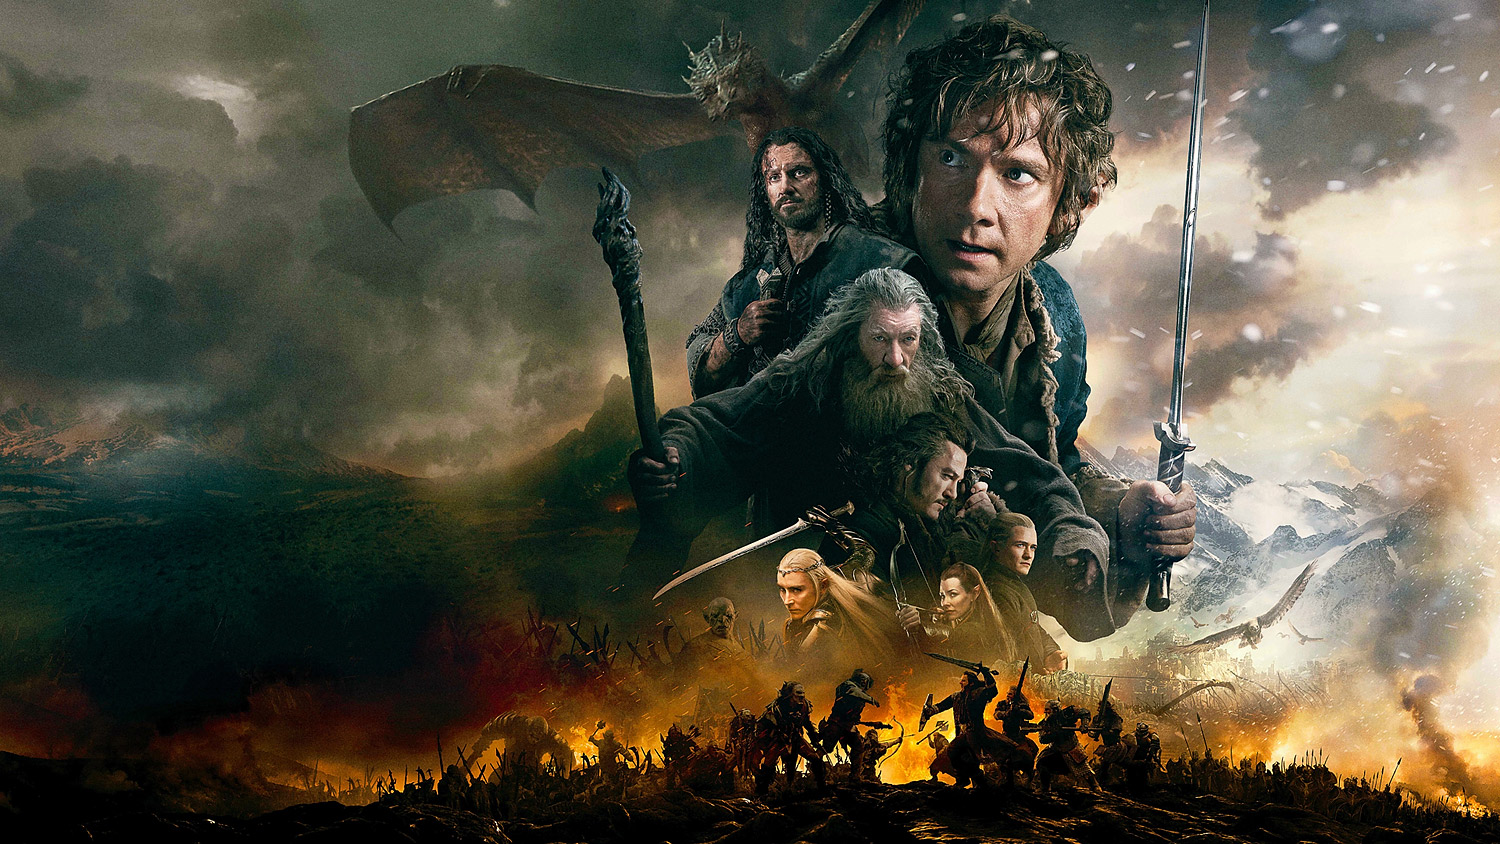 Le Hobbit : La Bataille des Cinq Armées | Fond d'écran